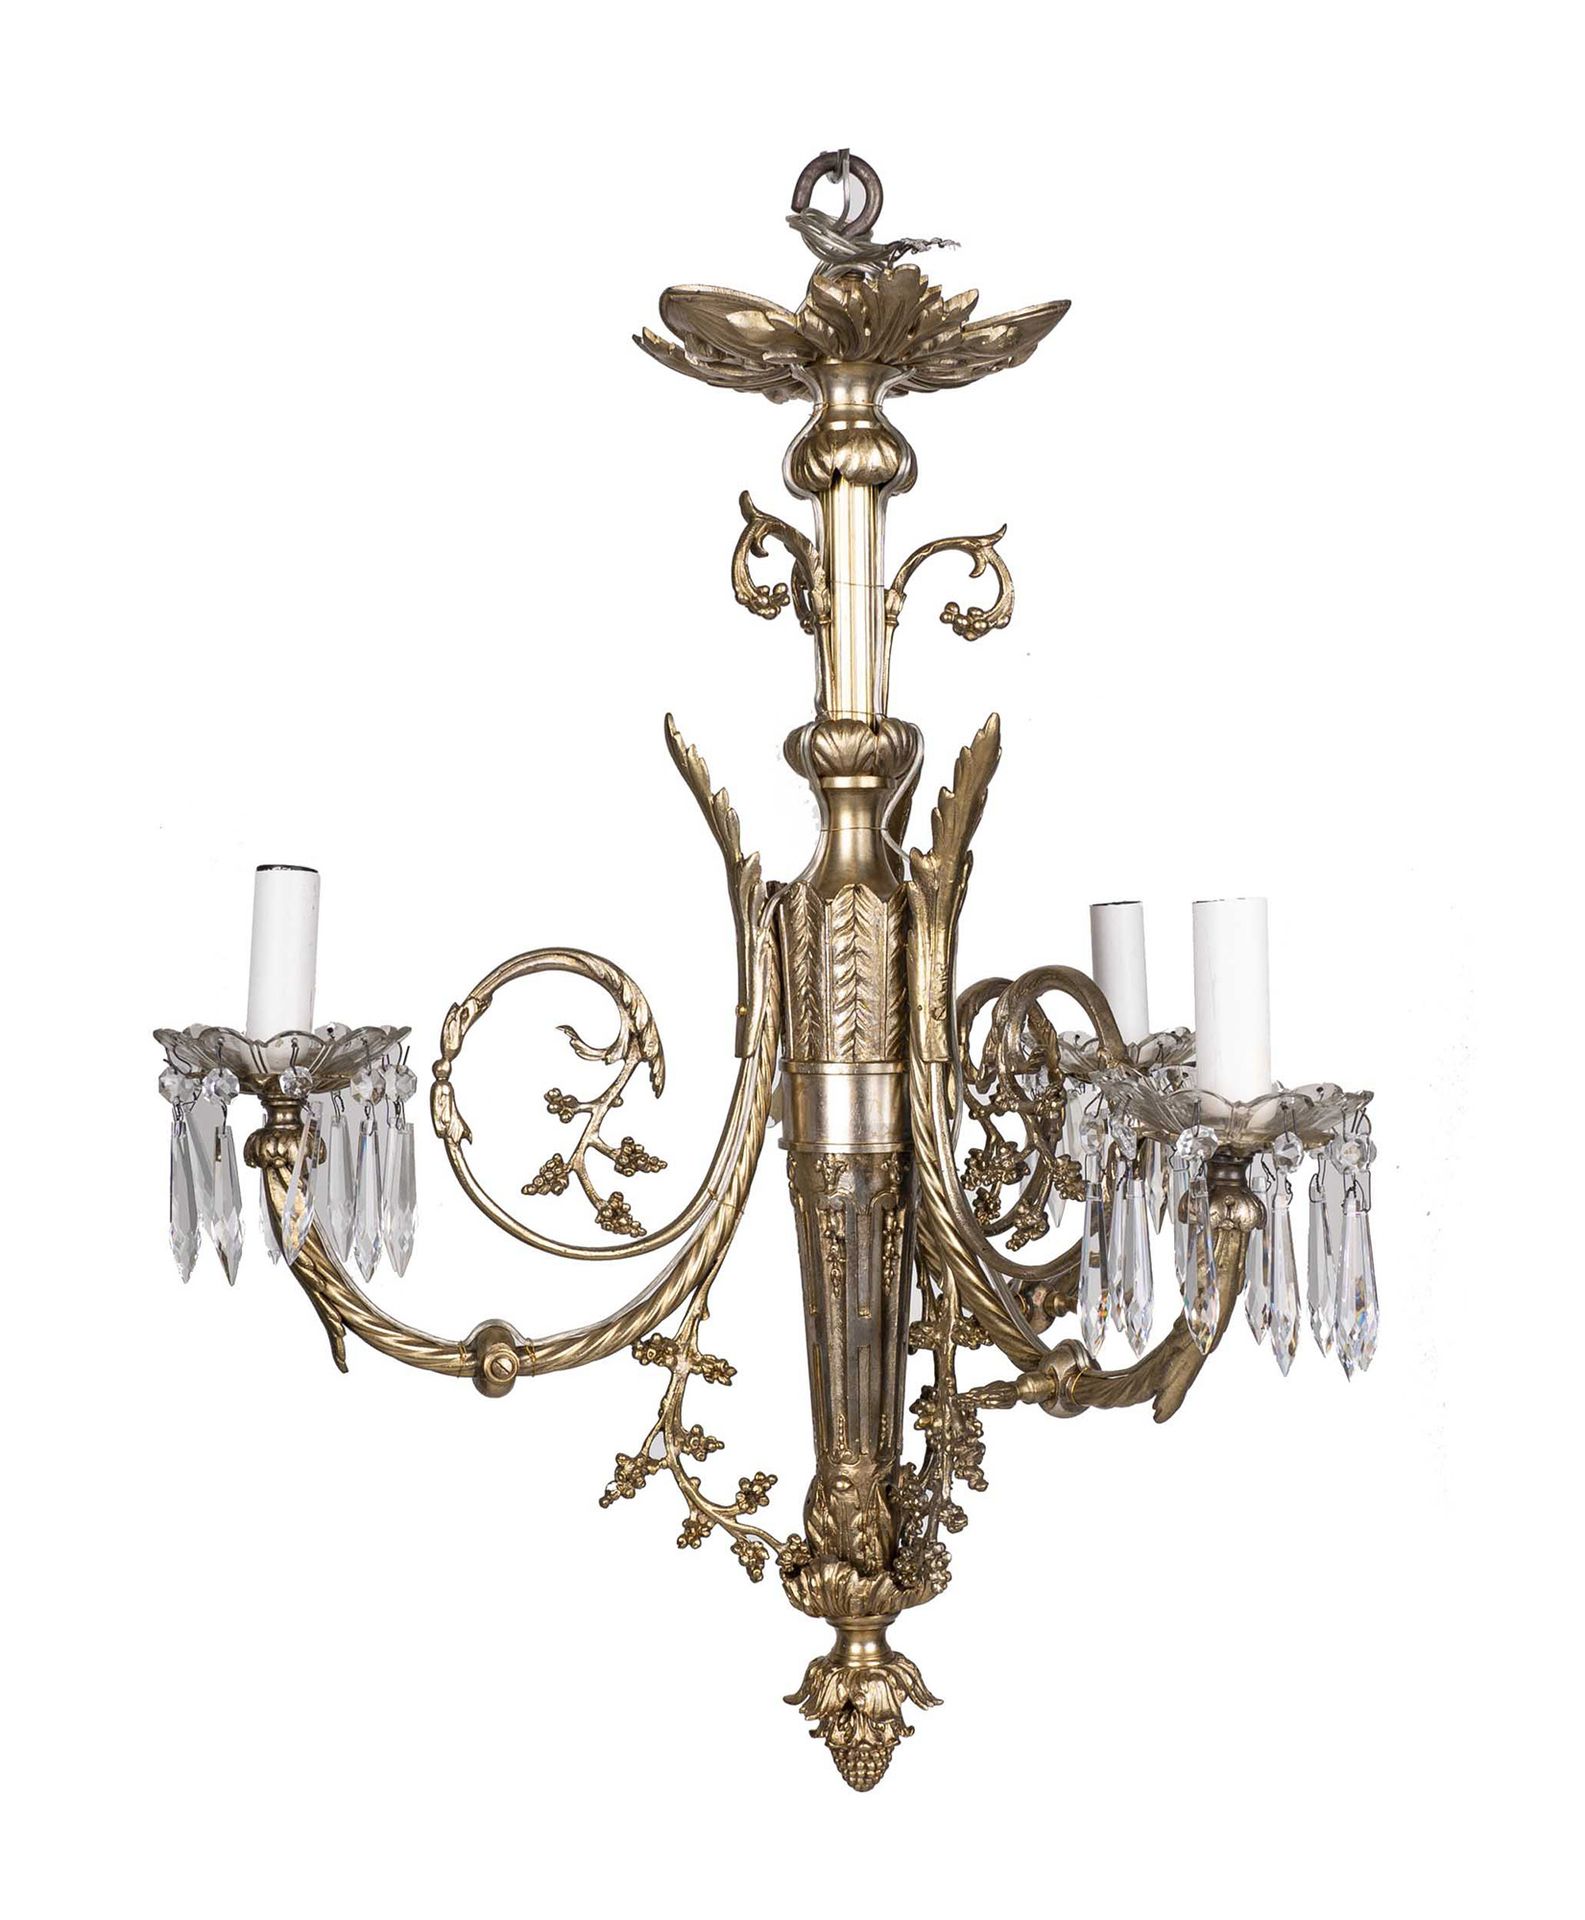 Null 路易十六风格的吊灯

20世纪初

鎏金青铜器，造型为带植物涡旋的两只手臂和带垂饰的水晶马裤的箭筒